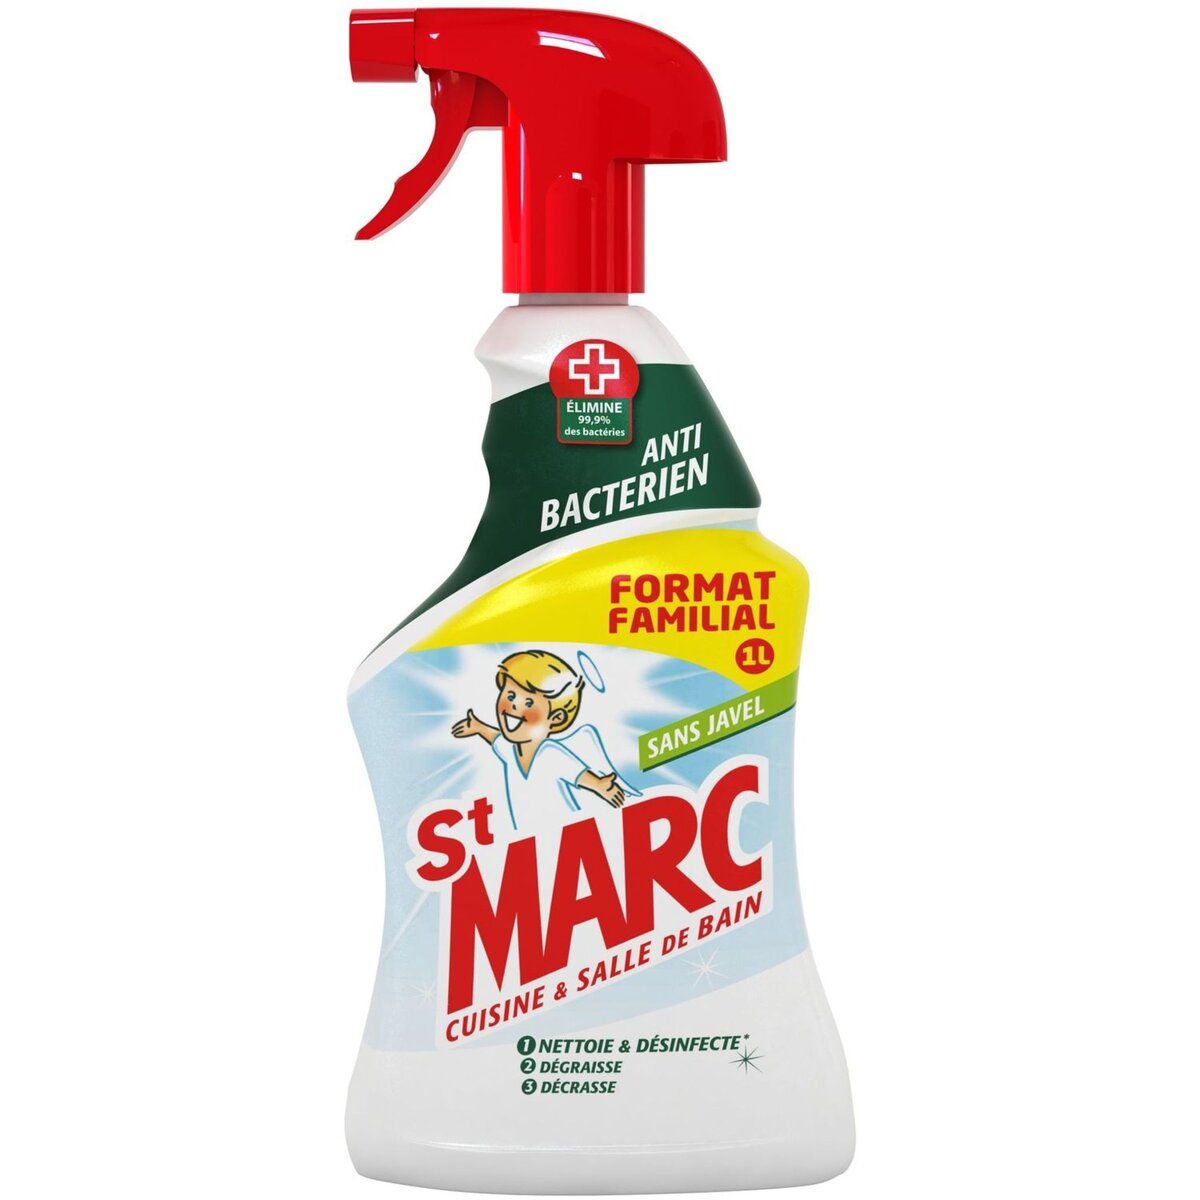 ST MARC St Marc spray antibactérien 1l format familial